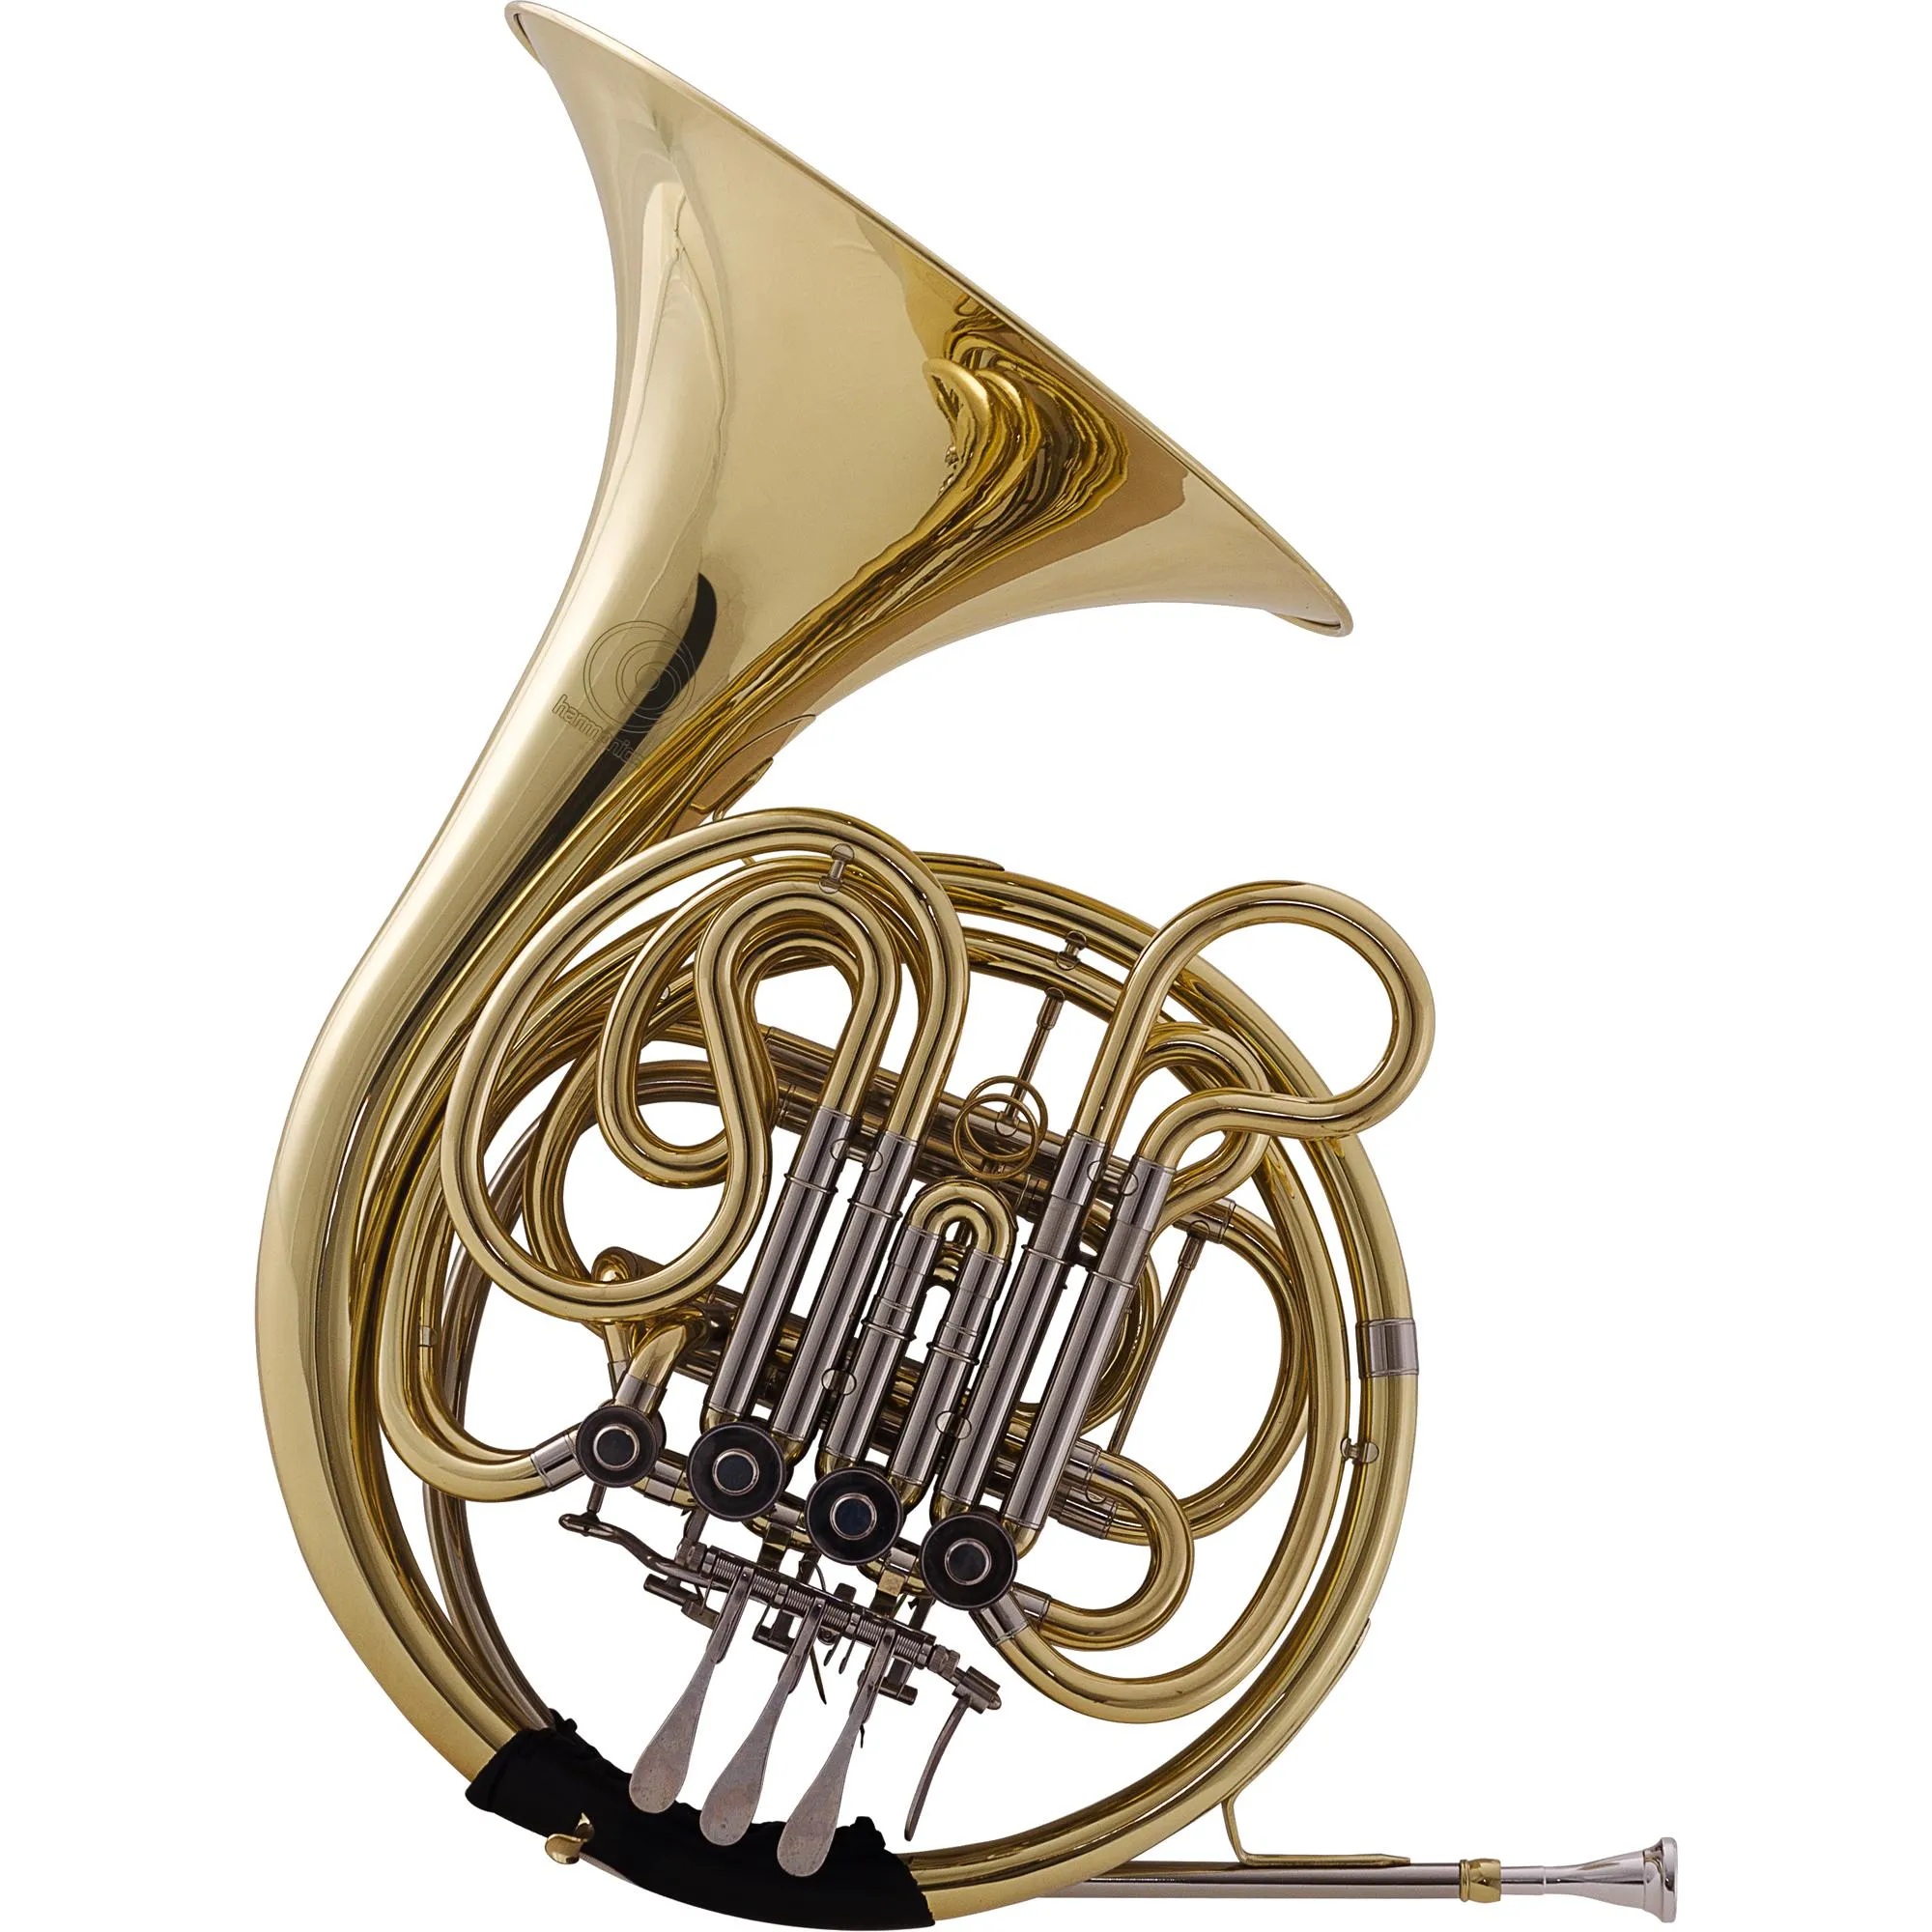 Trompa Harmonics F/BB HFH-600L Laqueado por 6.343,00 à vista no boleto/pix ou parcele em até 12x sem juros. Compre na loja Mundomax!